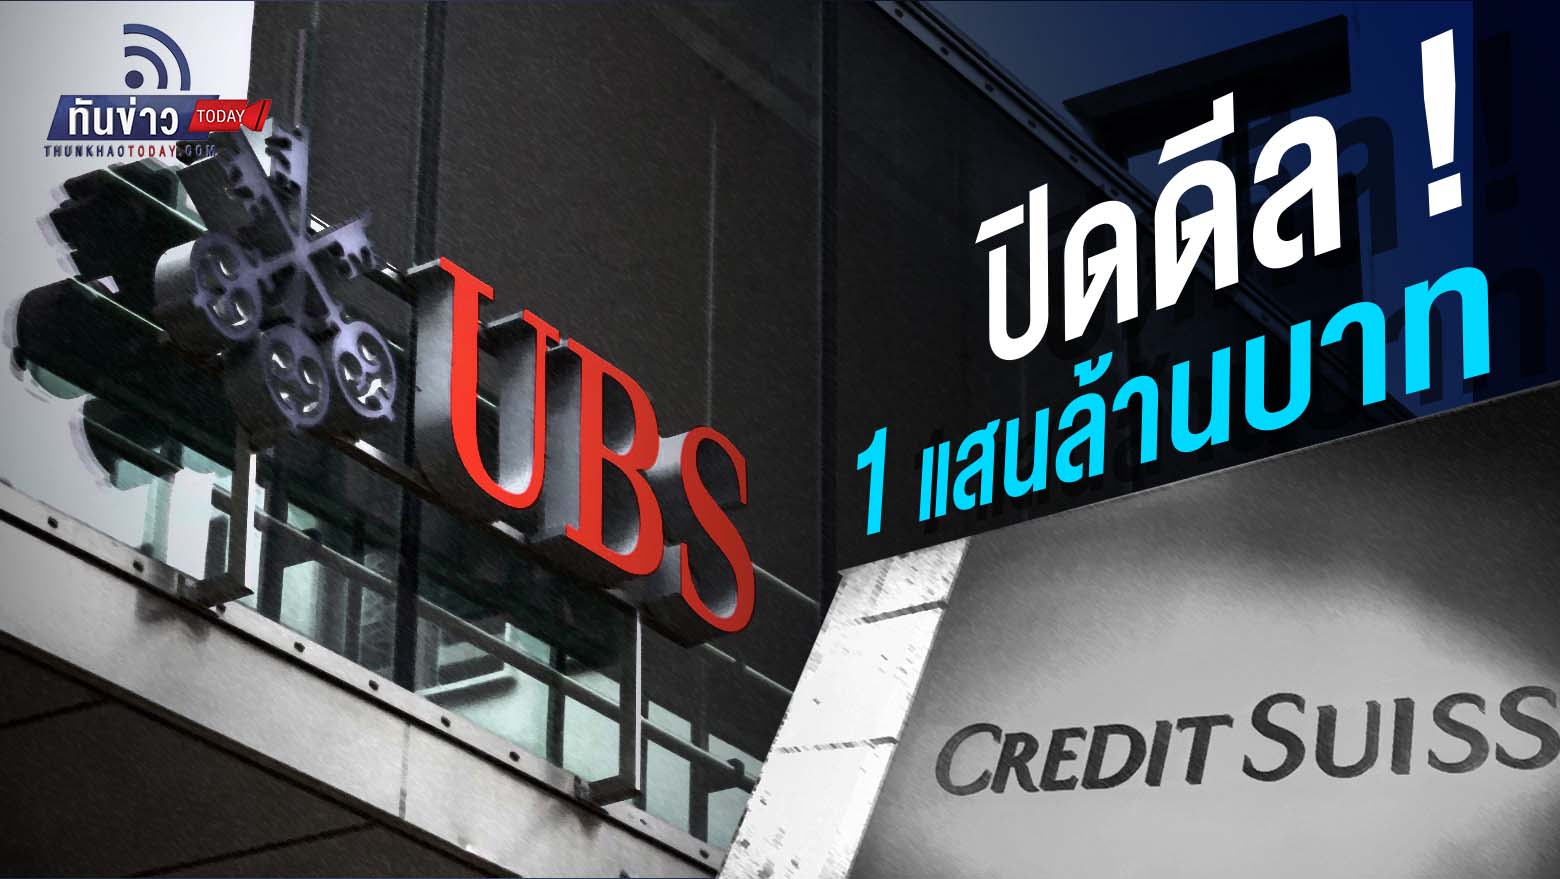 ปิดดีล ! UBS ล่าสุดที่จะเซื้อ Credit Suisse ในราคา 3.2 พันล้านเหรียญสหรัฐ โดยมีอัตราส่วนการแปลงที่ 22.48 หุ้น CS จะได้รับ 1 หุ้น UBS